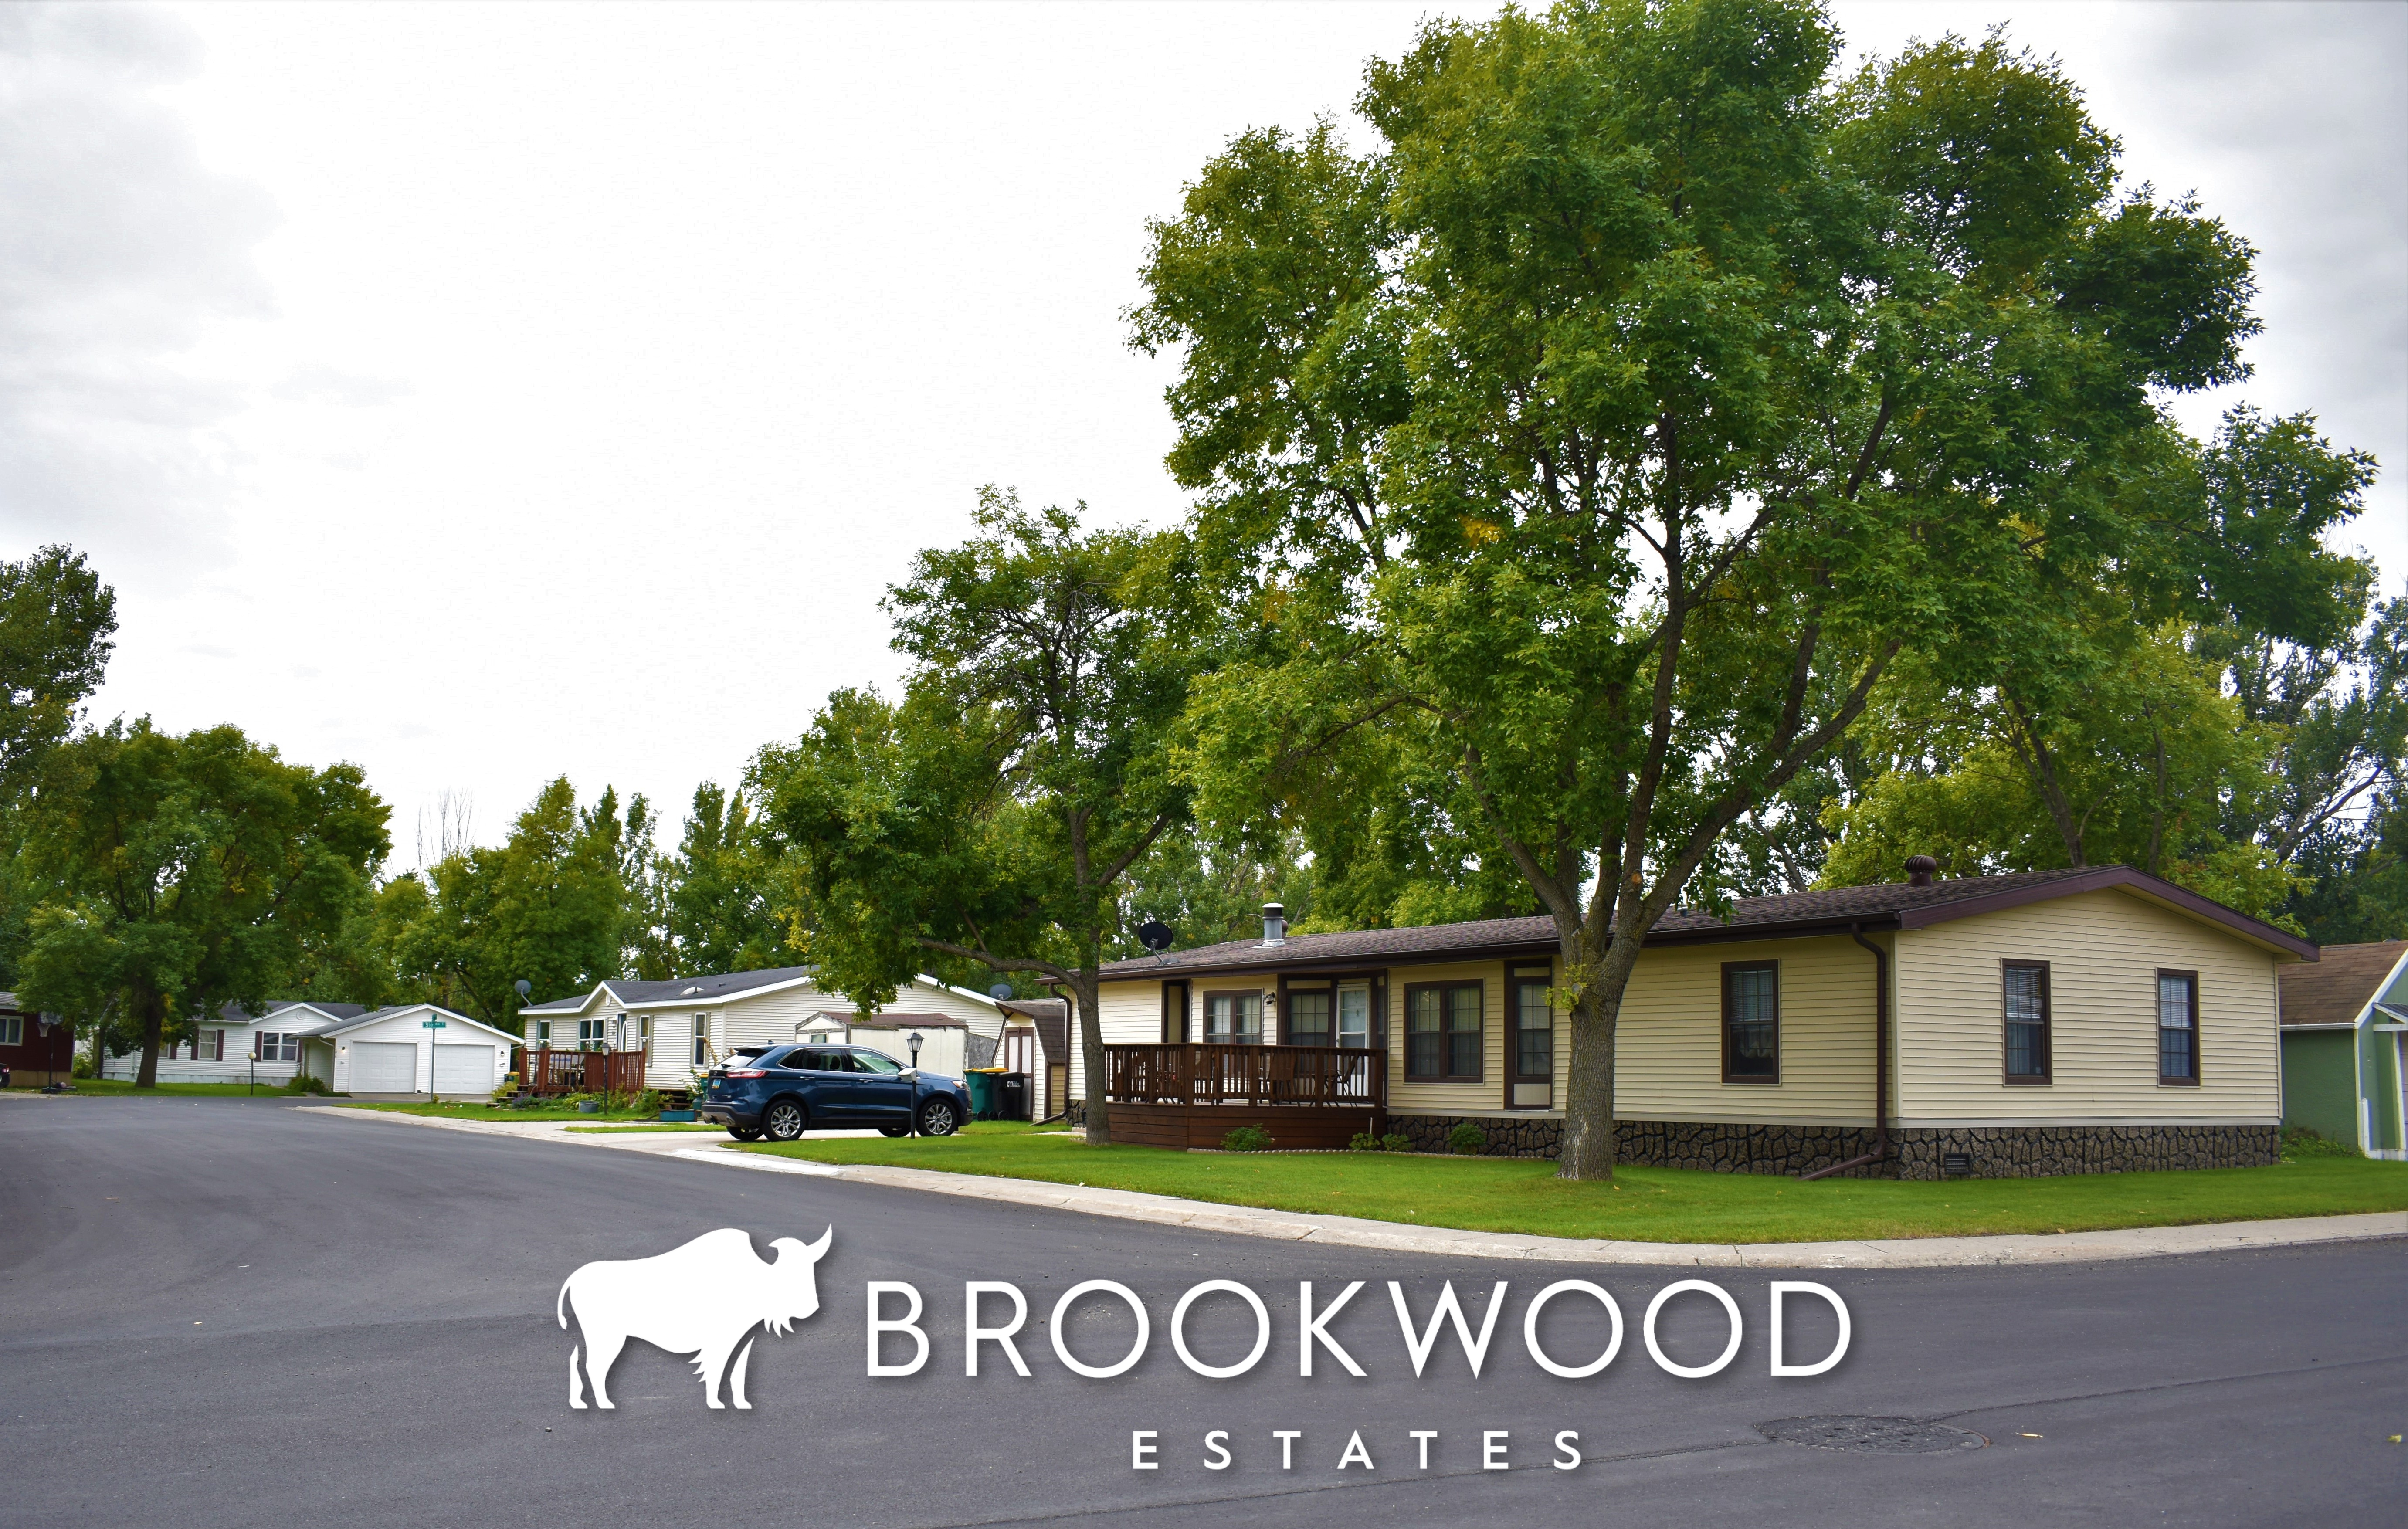 New Roads at Brookwood Estates